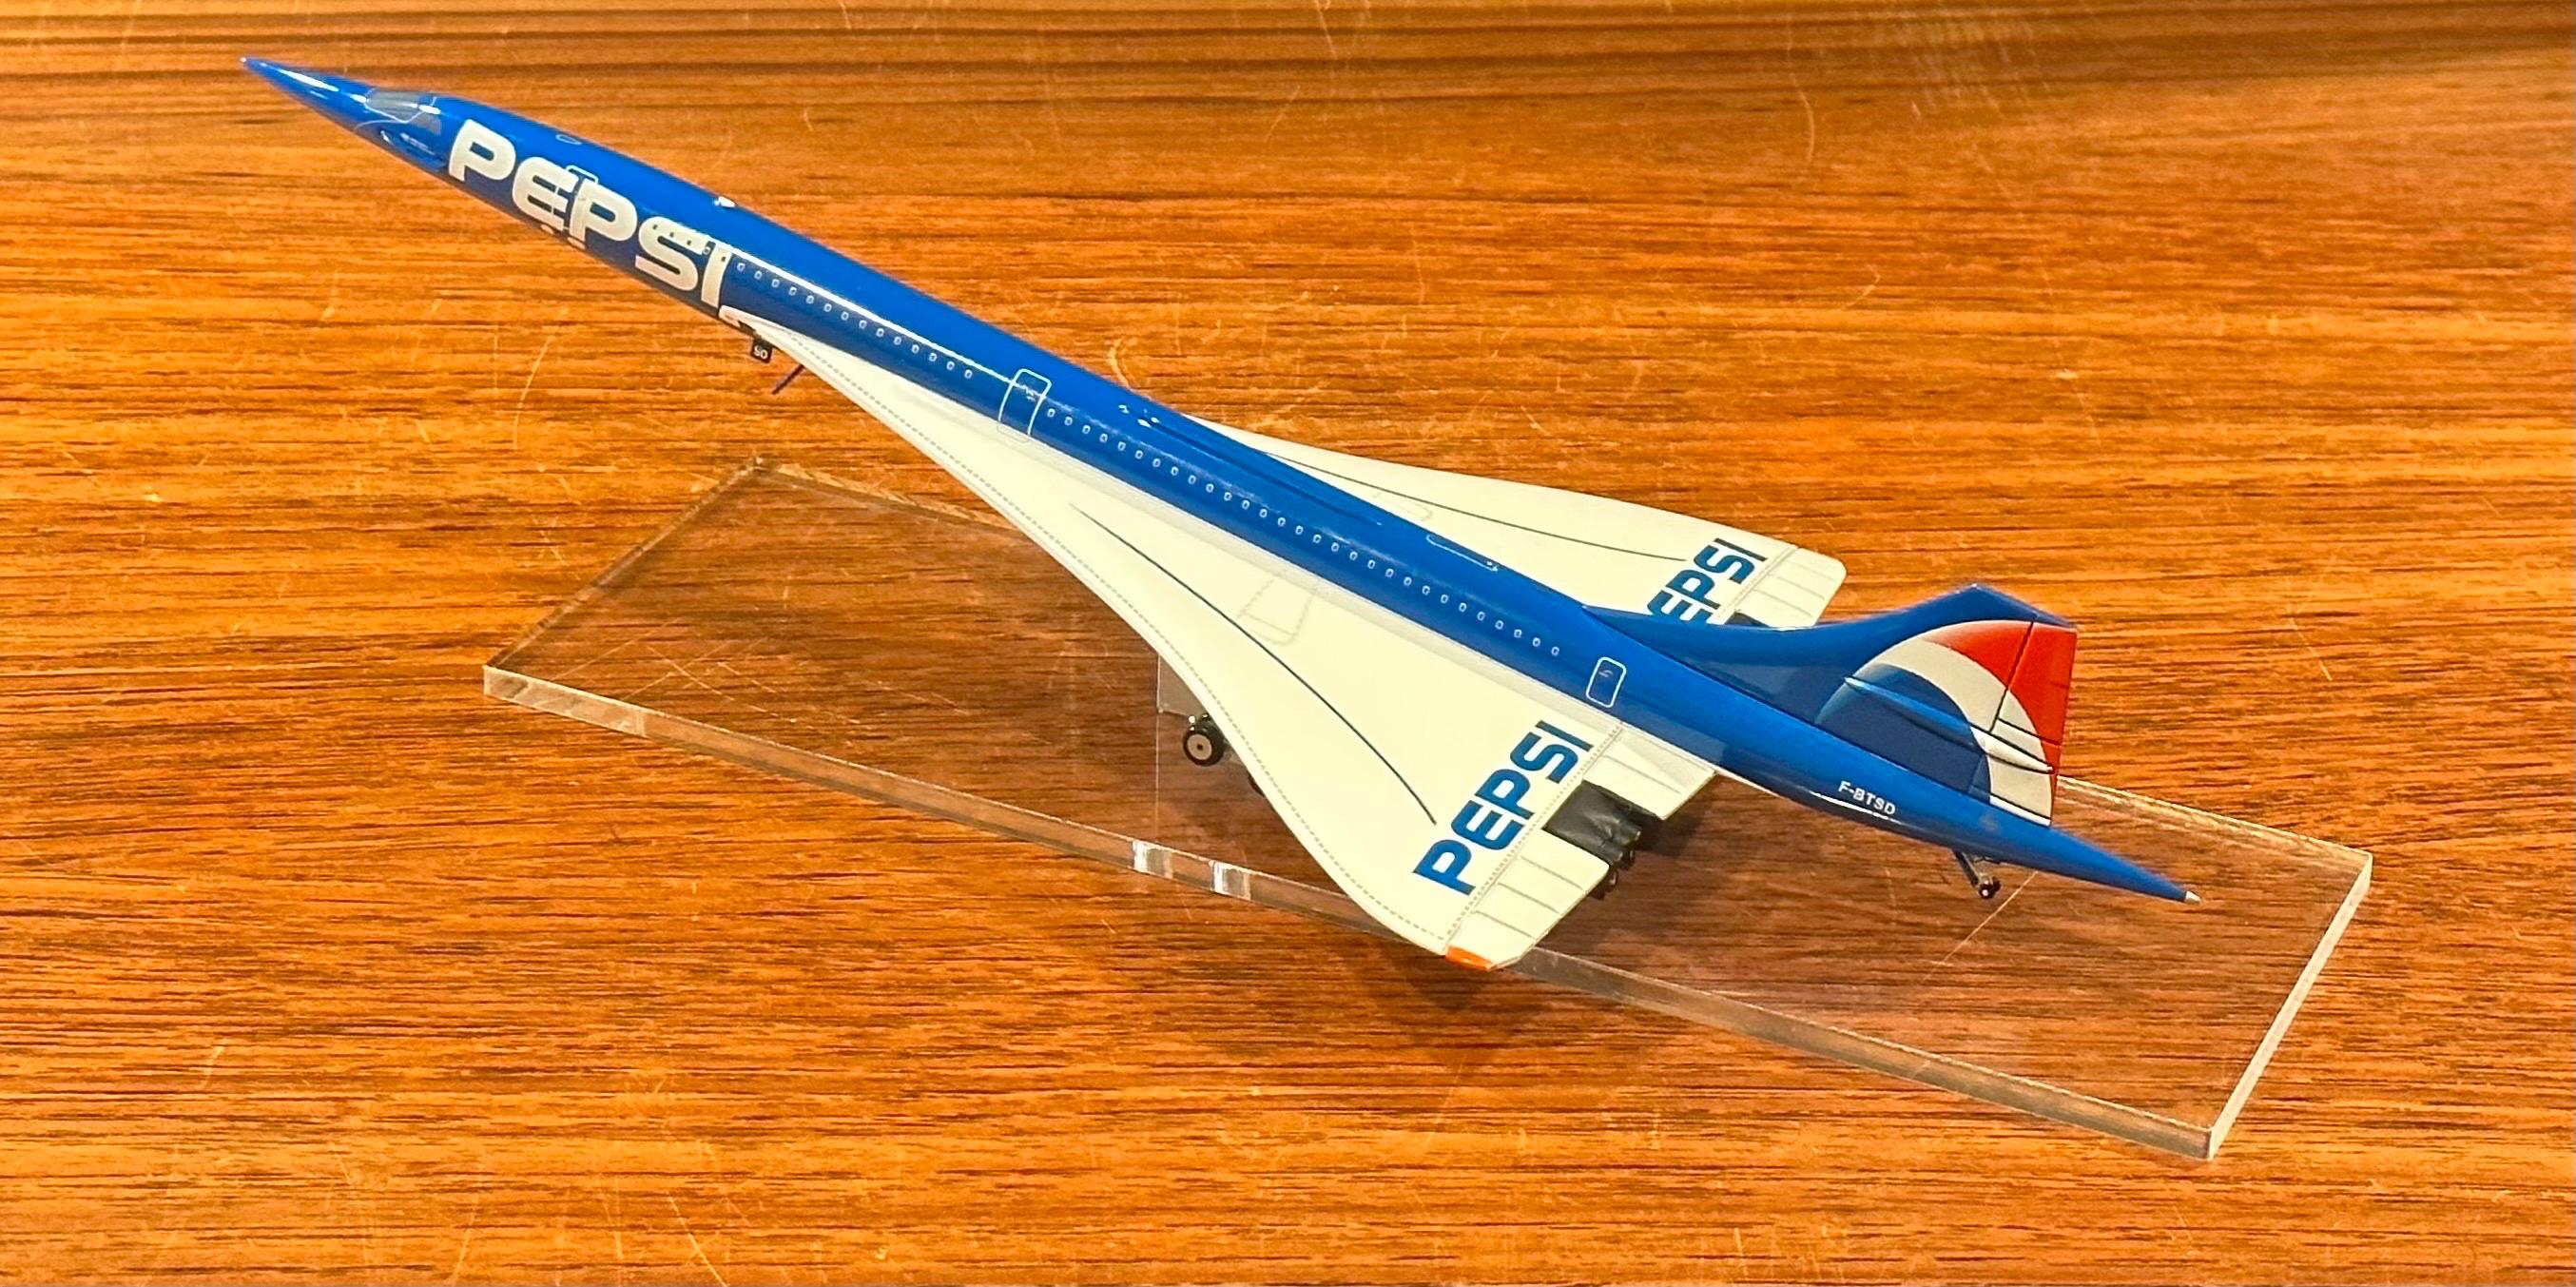 Pepsi Logoed Concorde Jetliner Desk Model on Lucite Base For Sale 4